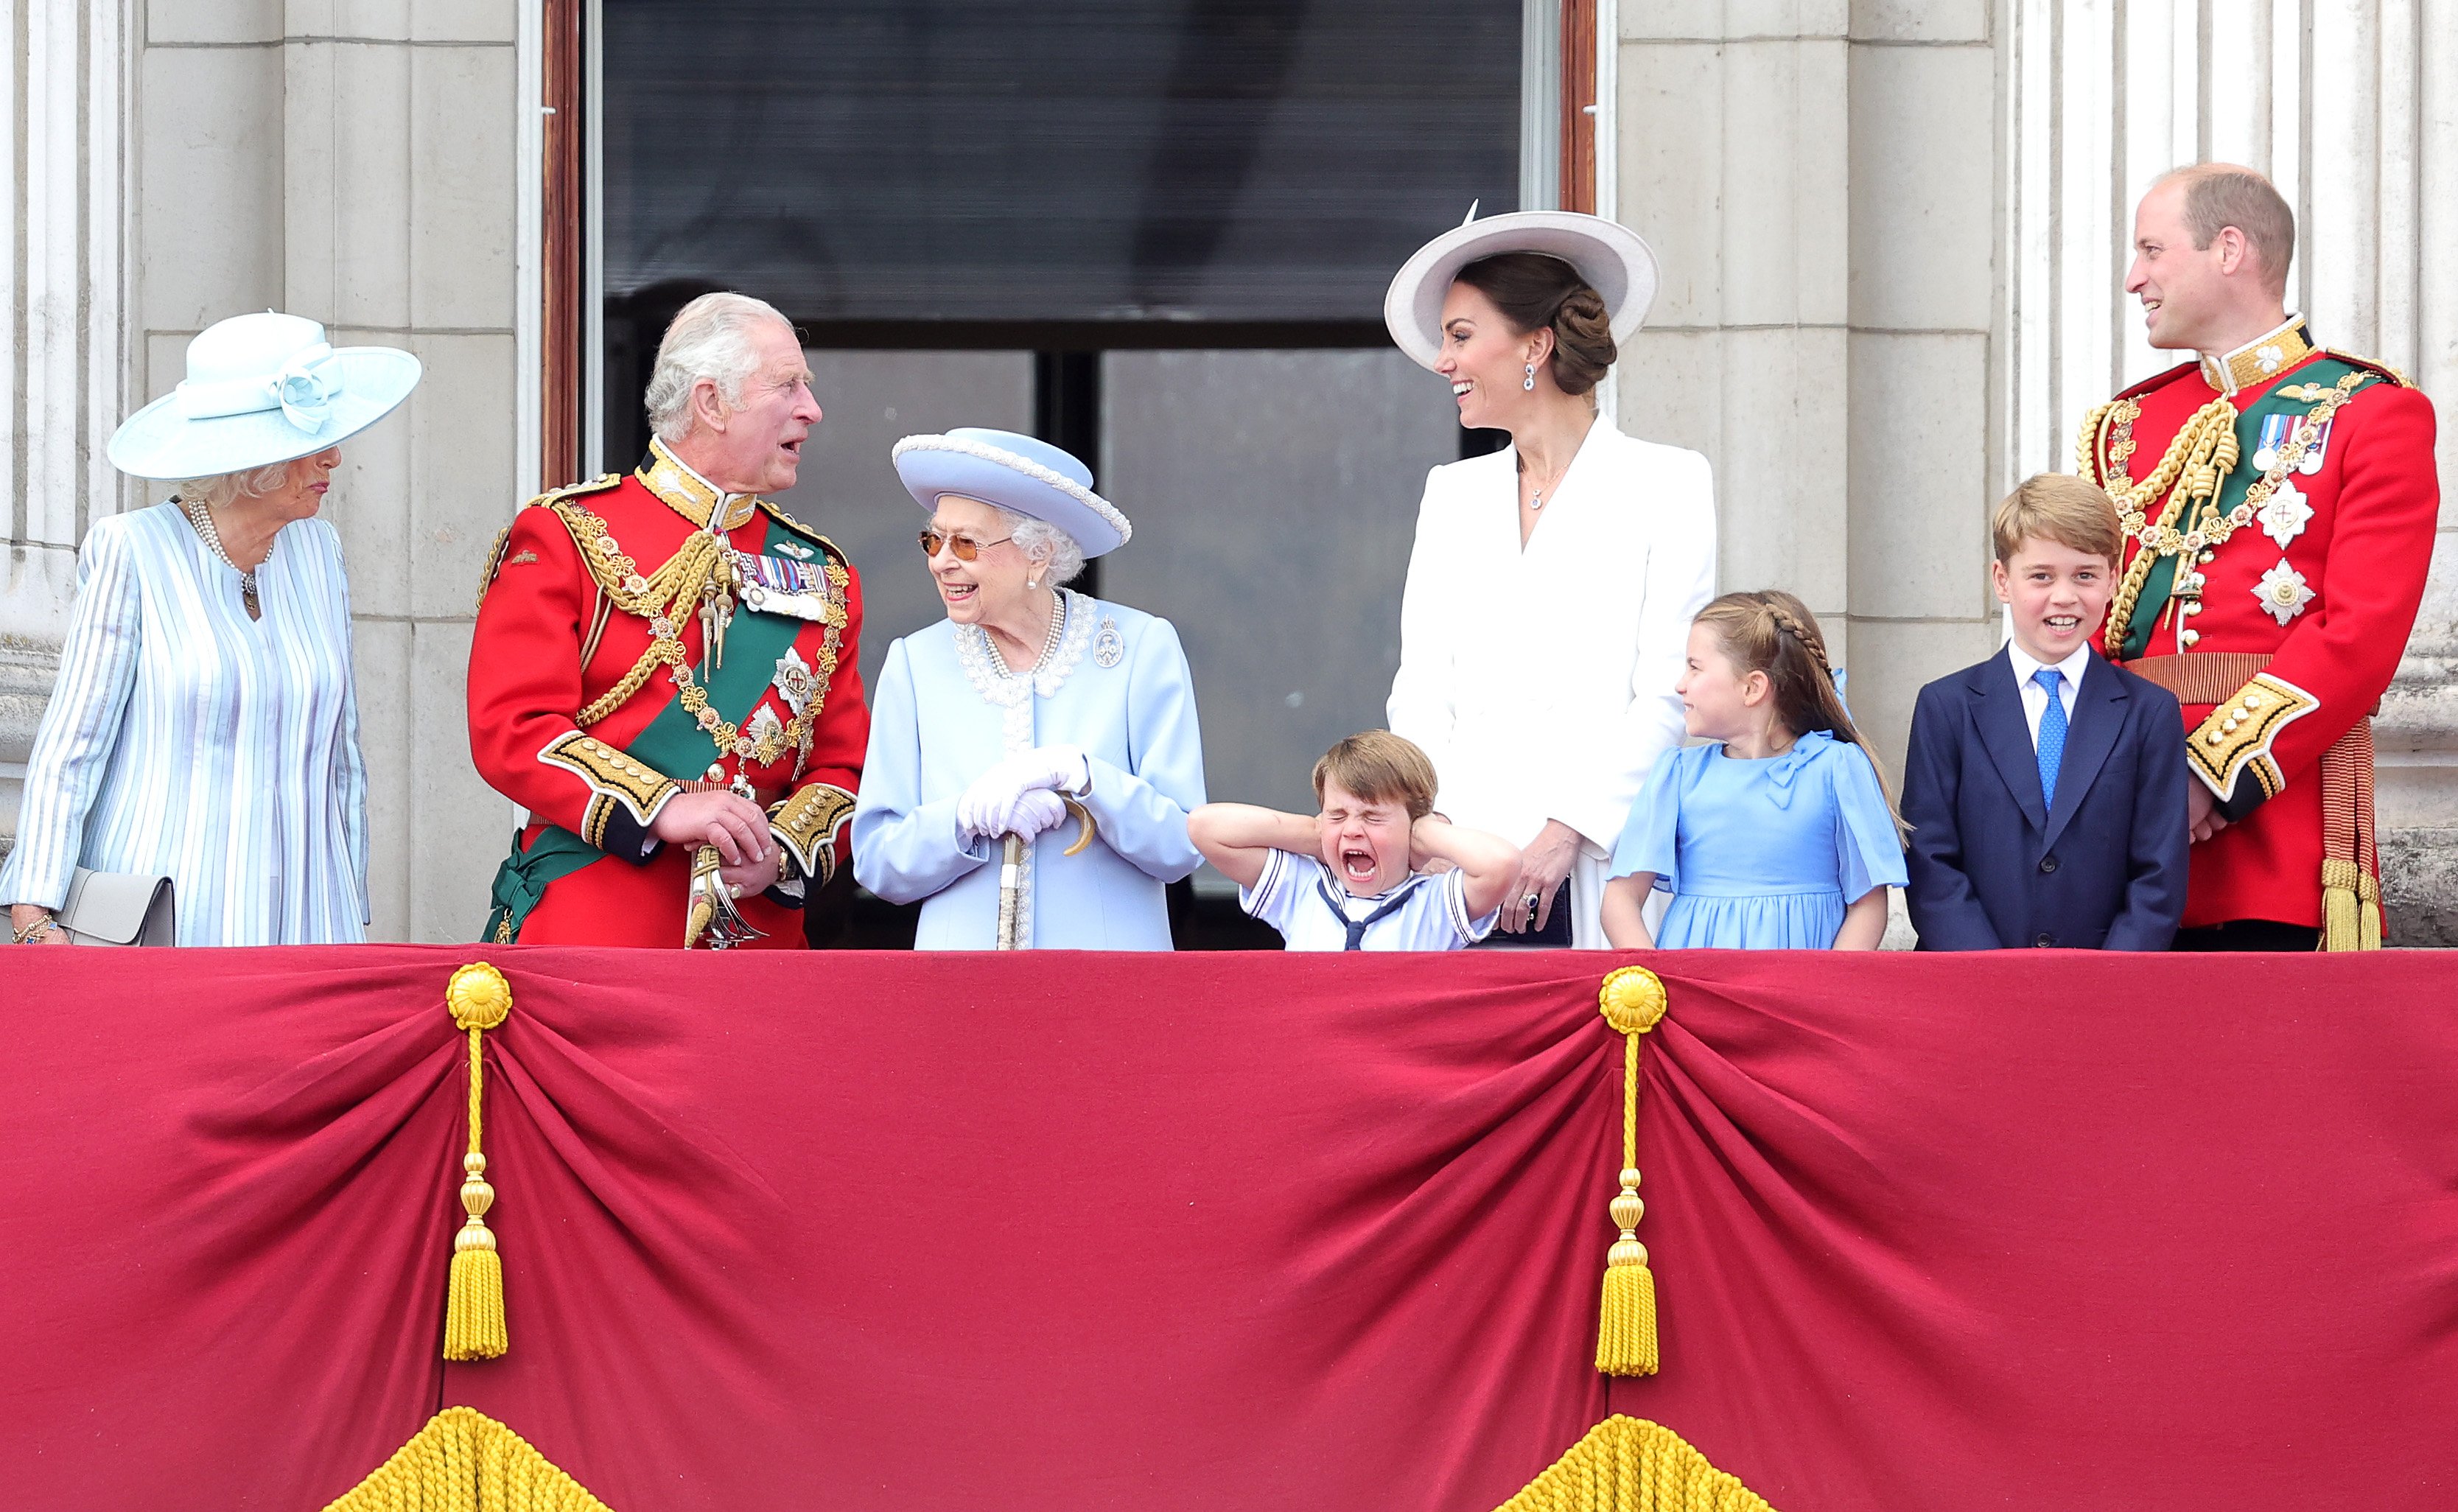 La reine Élisabeth II sourit sur le balcon du palais de Buckingham pendant le défilé du drapeau aux côtés de la duchesse de Cornouailles, du prince Charles, du prince Louis de Cambridge, de Catherine, duchesse de Cambridge, de la princesse Charlotte de Cambridge, du prince George de Cambridge et du prince William pendant le défilé du drapeau le 2 juin 2022 à Londres, en Angleterre | Source : Getty Images